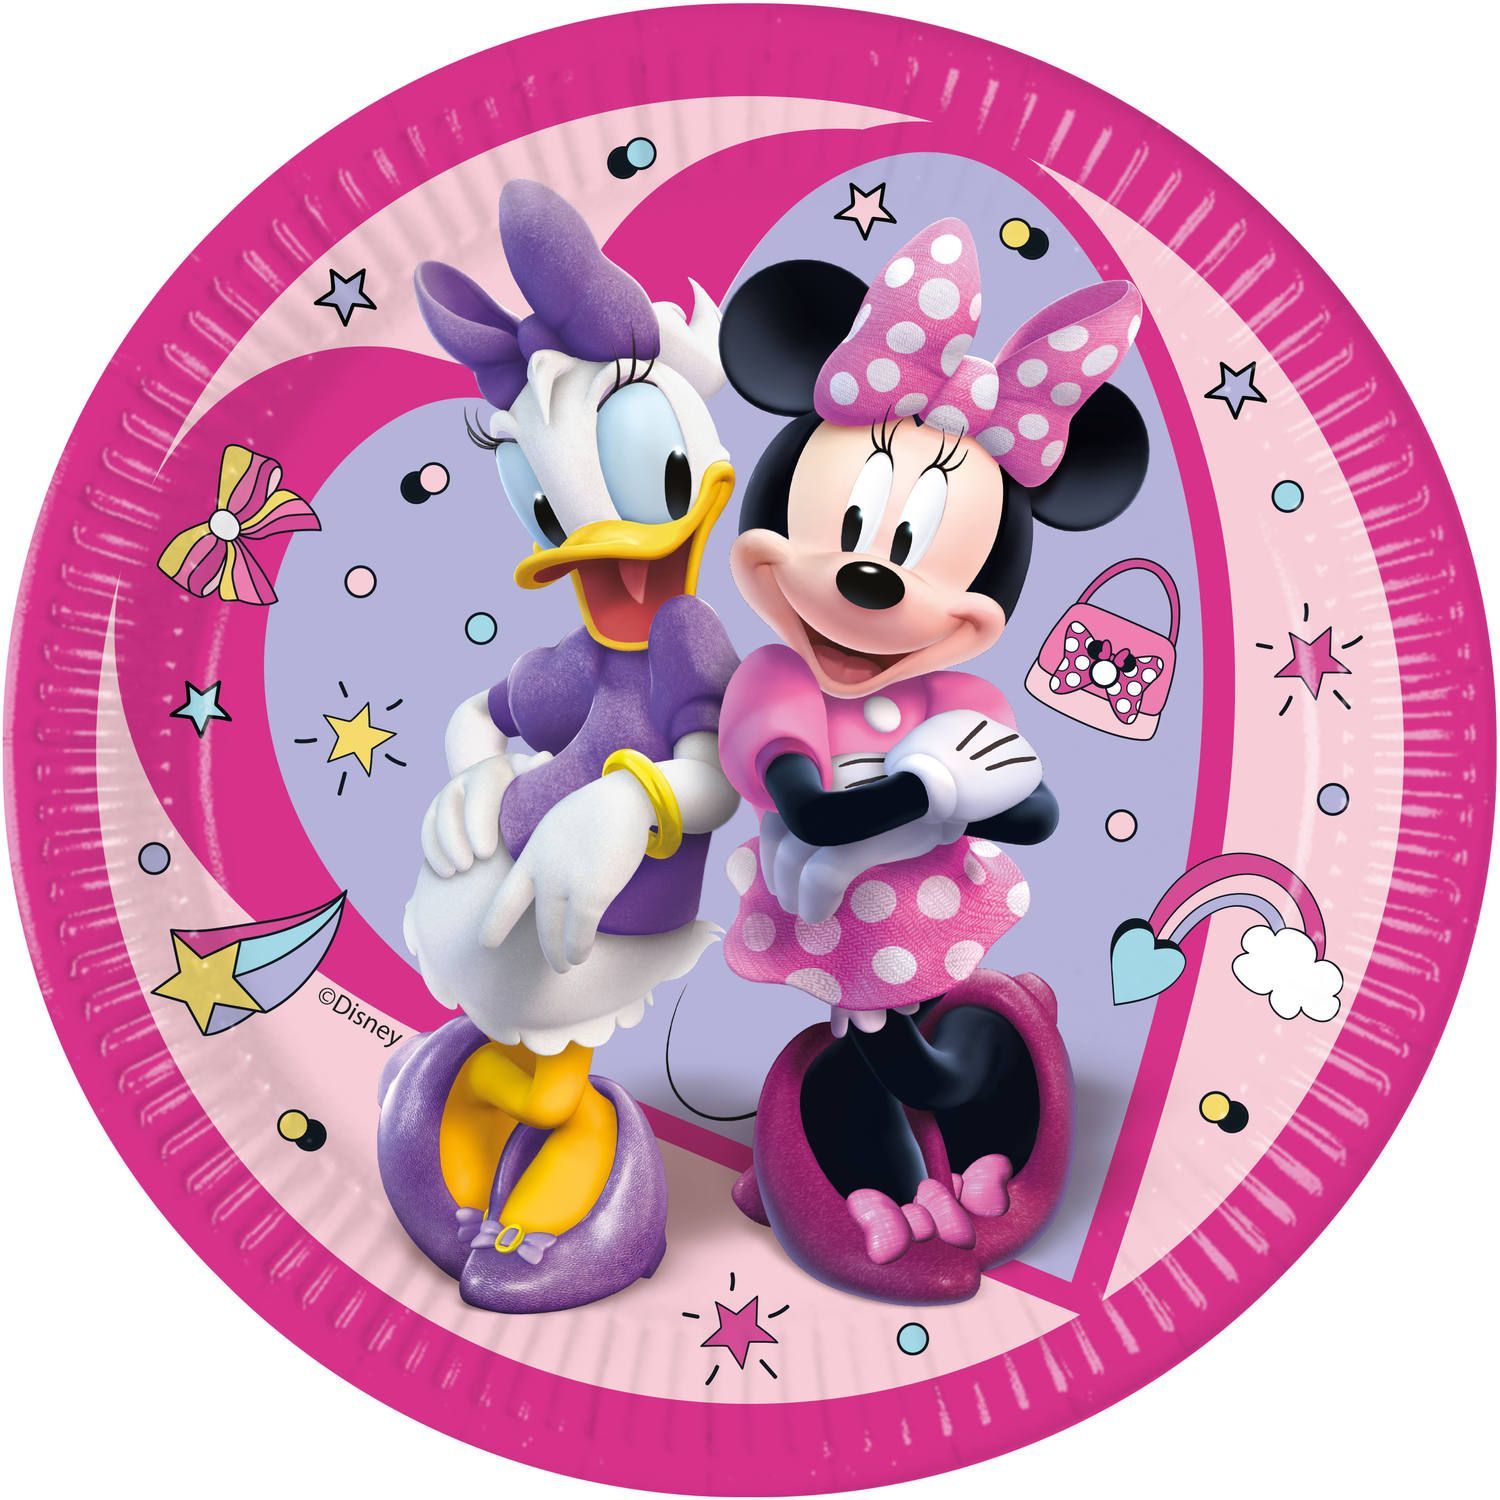 Minnie Mouse kinderfeestje bordjes 8 stuks